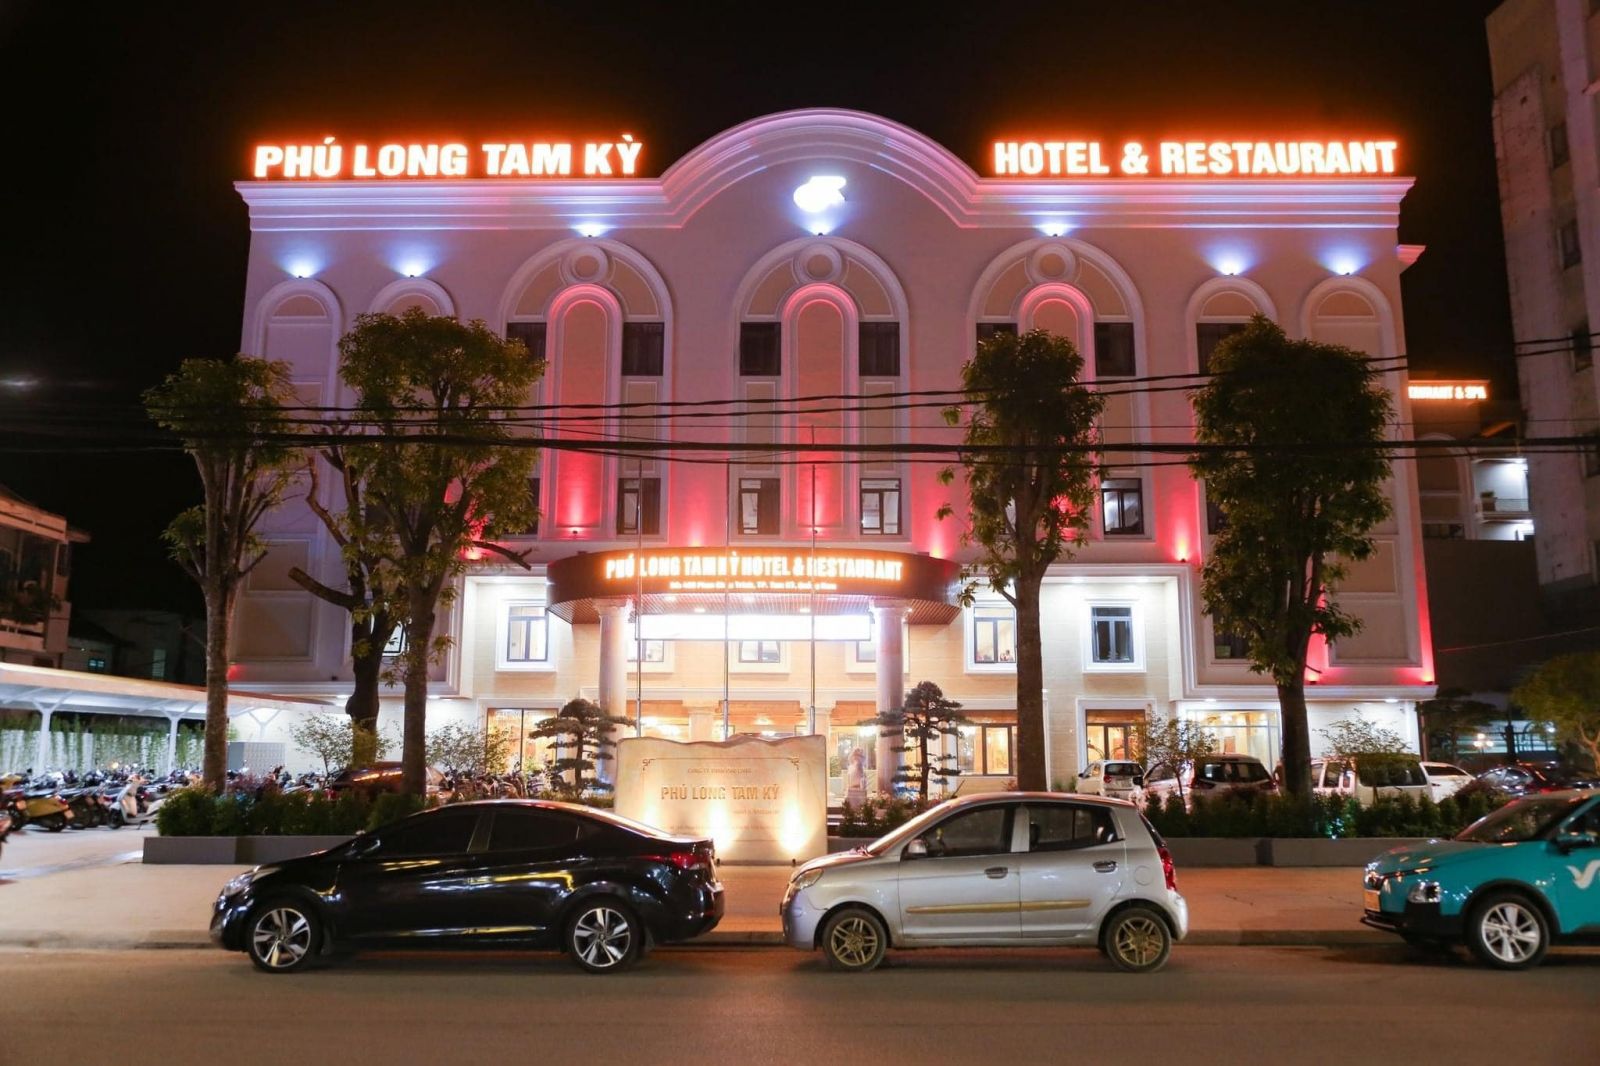 Quảng Nam: Kỷ niệm 15 năm thành lập và khai trương Khu liên hợp khách sạn, nhà hàng Phú Long Tam Kỳ- Ảnh 4.